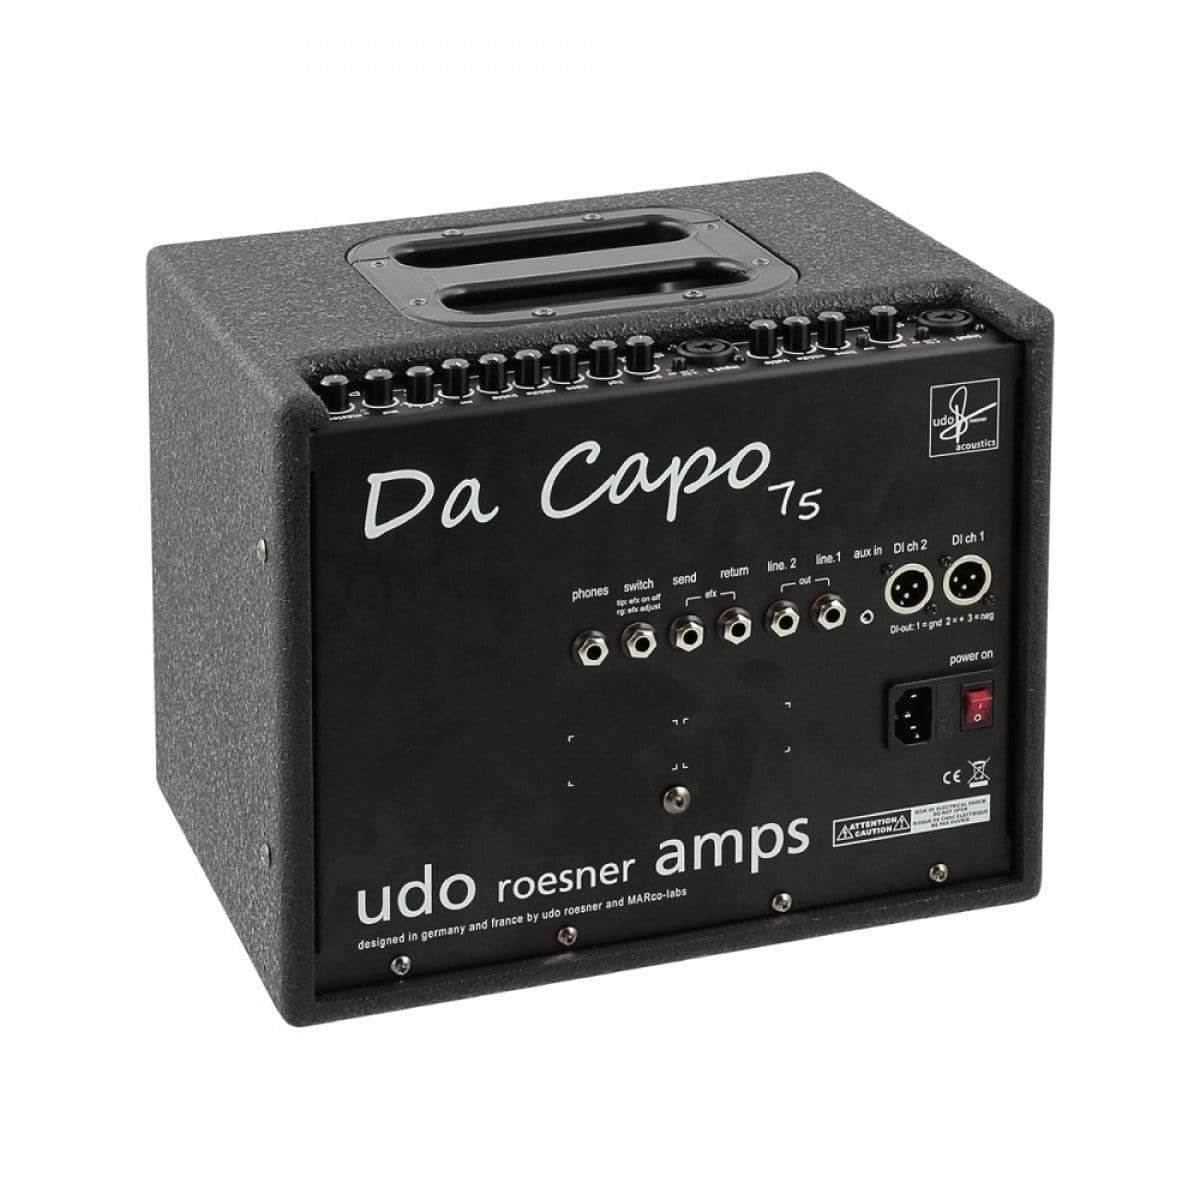 Udo Roesner Amps Da Capo 75 Combo Amplifier - Artisan Guitars